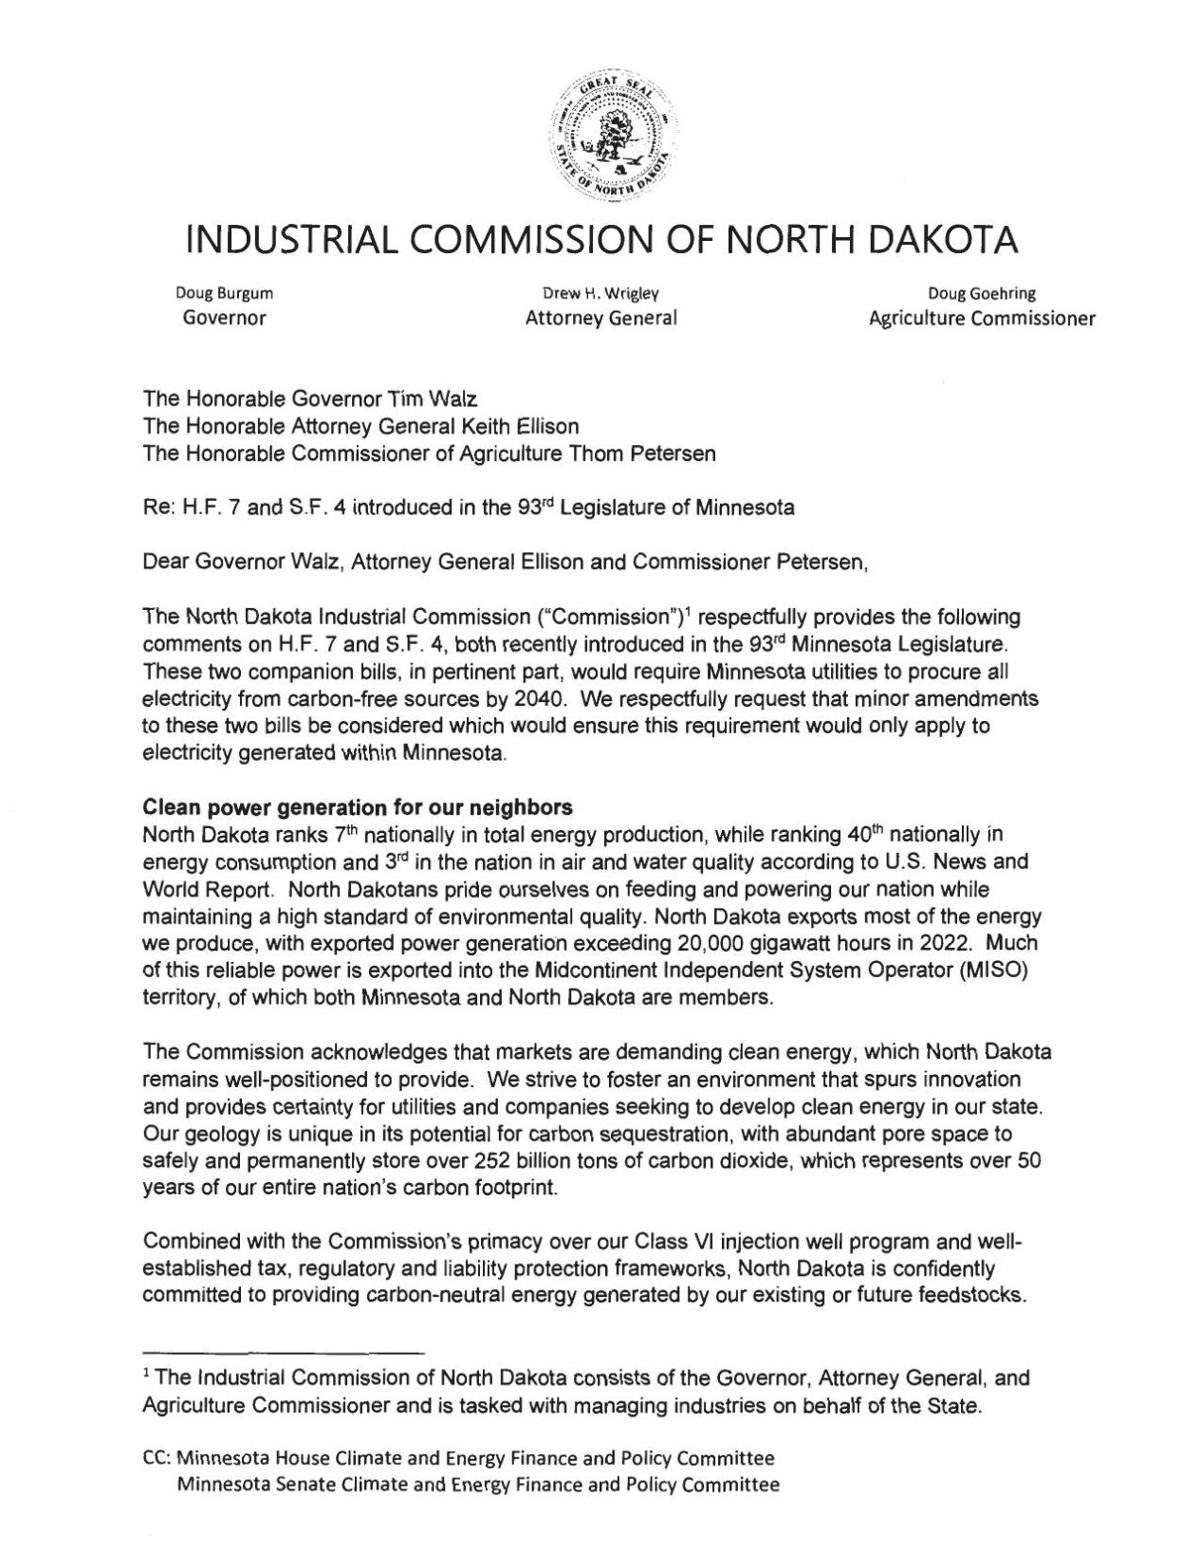 North Dakota Industrial Commission Letter to Minnesota Leadership